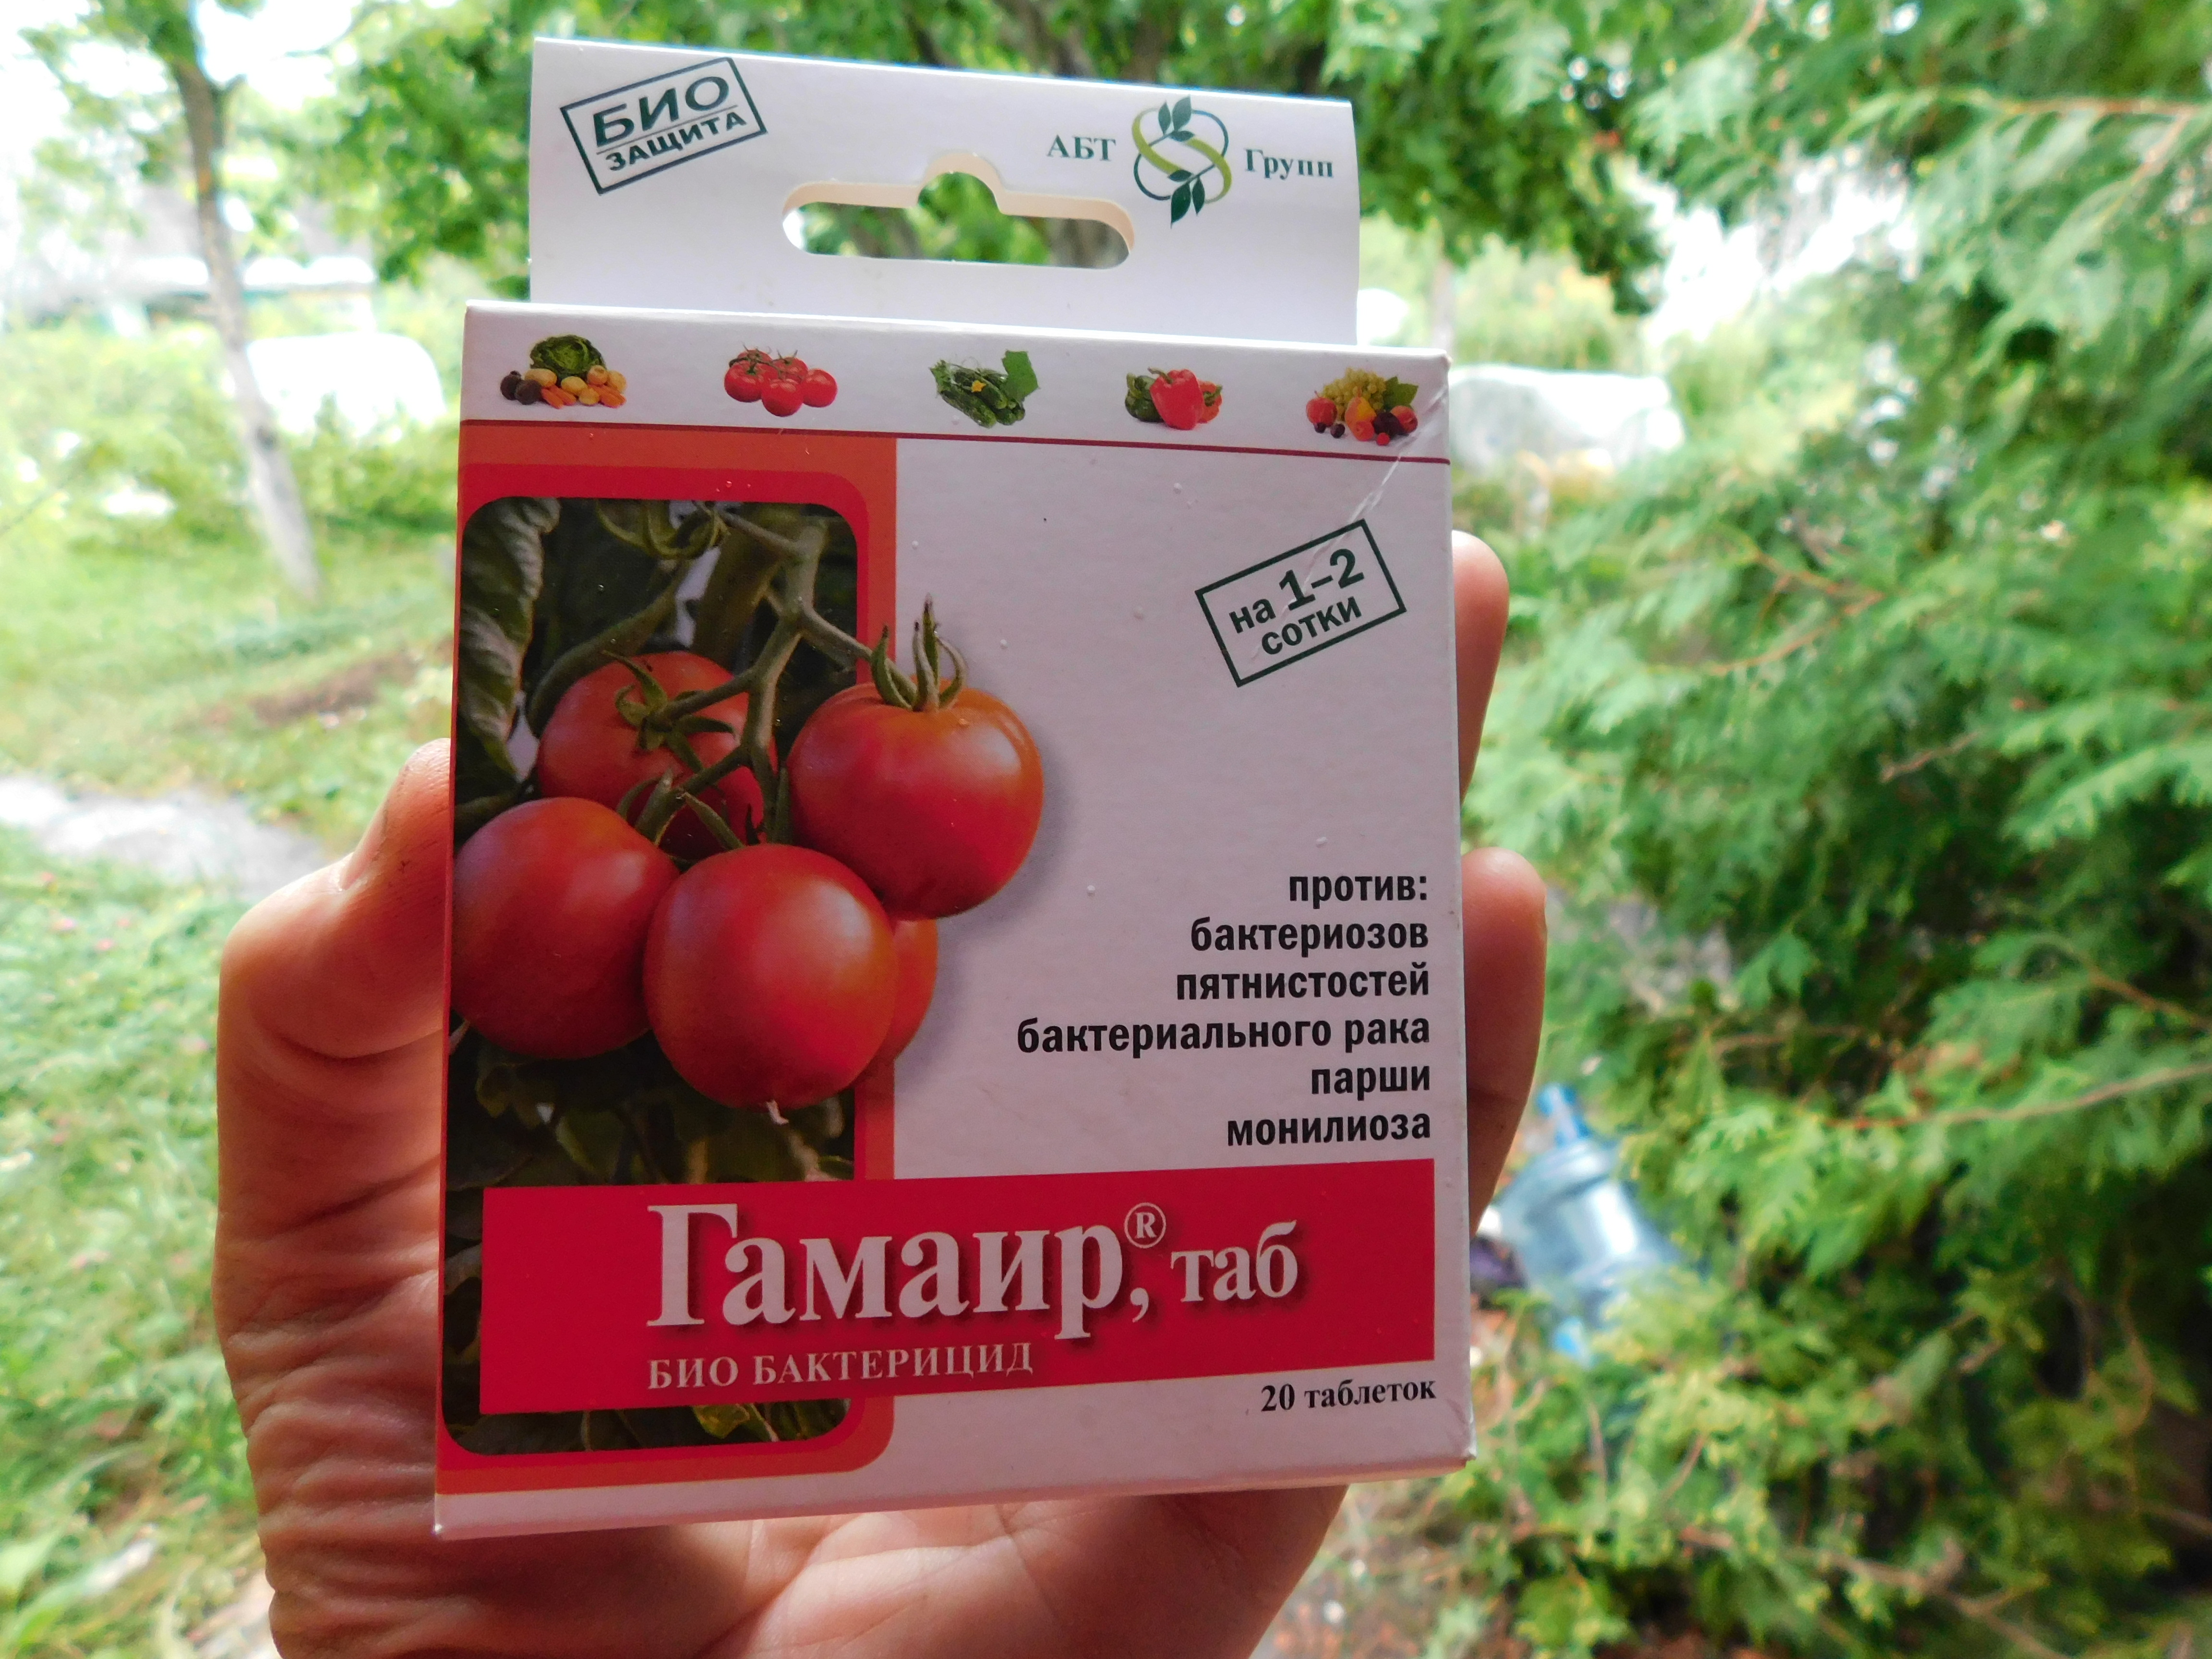 Гамаир - препарат для лечения томатов